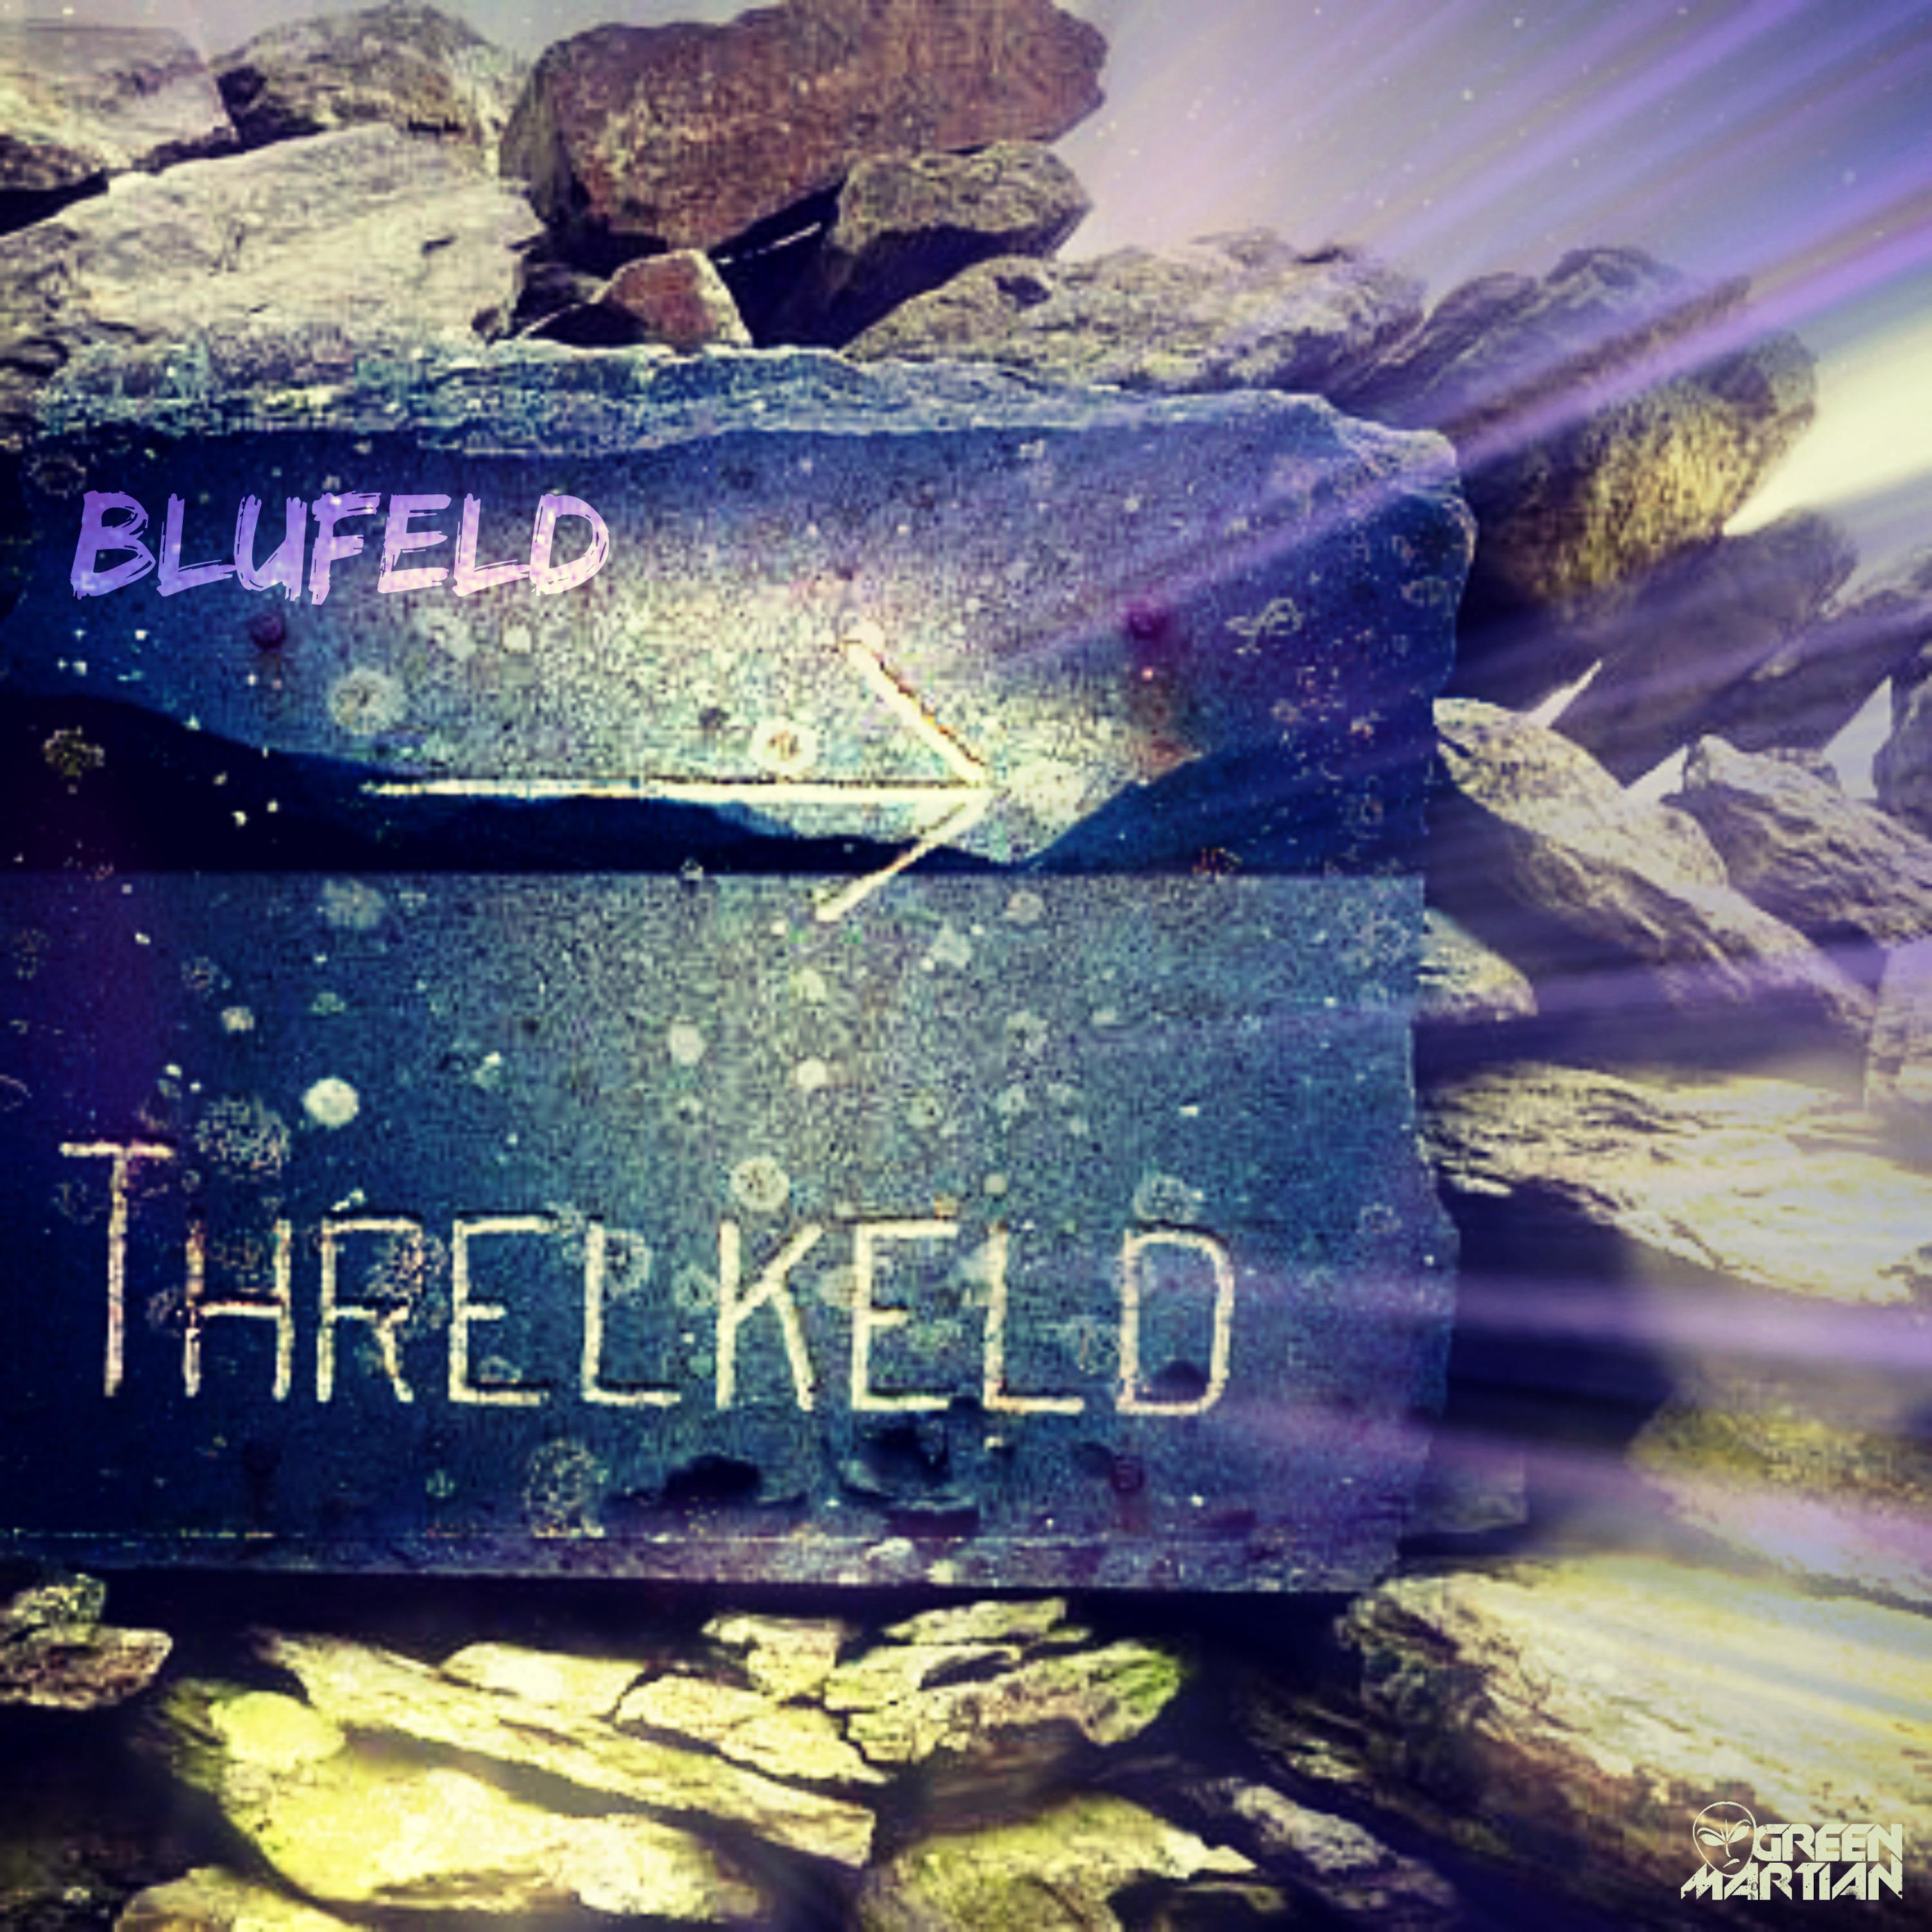 Threlkeld